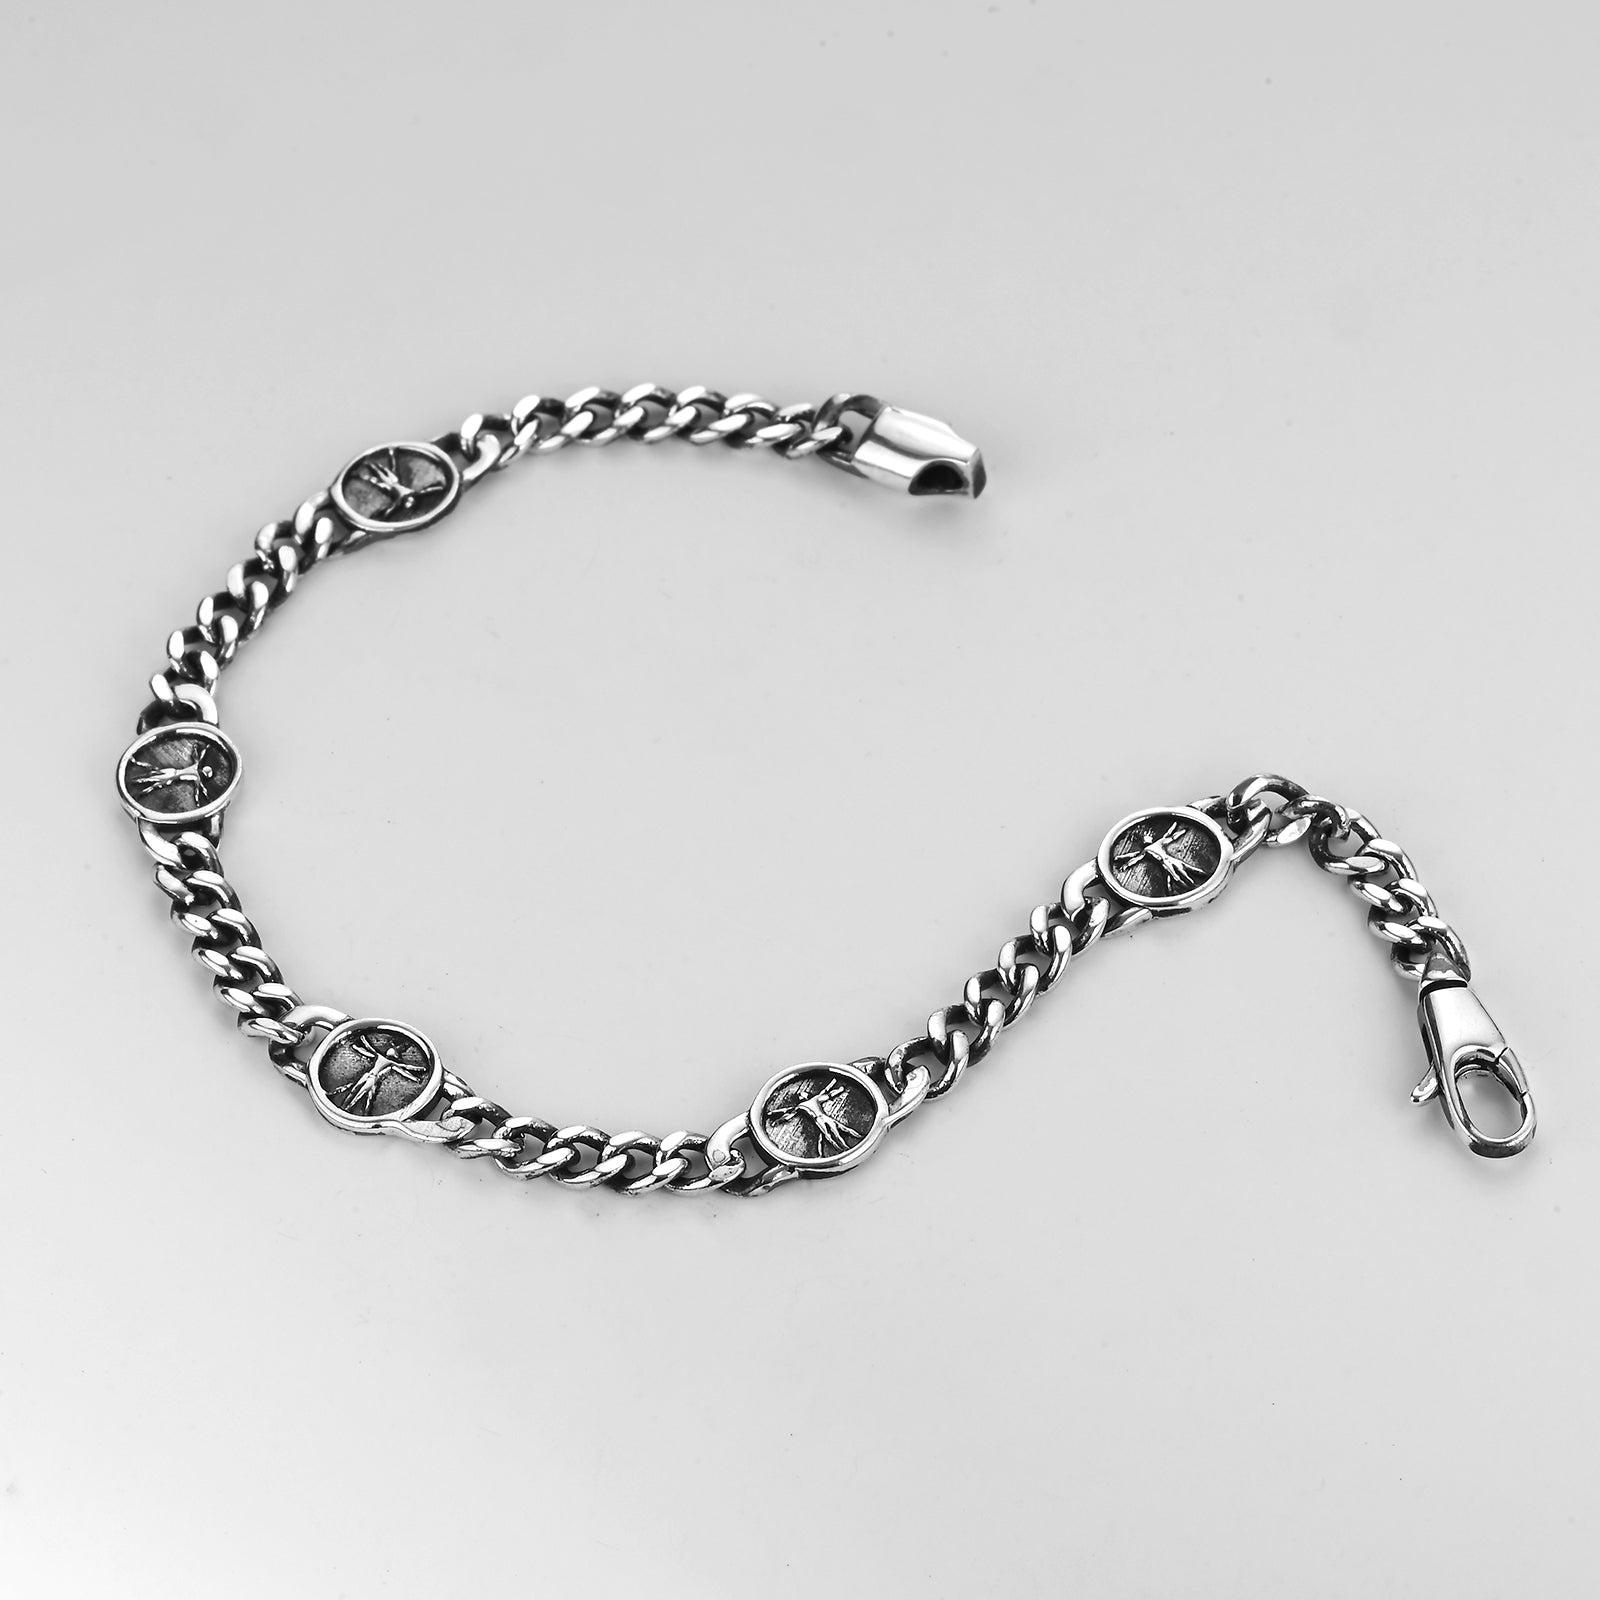 Vitruvian Man - Bracelet